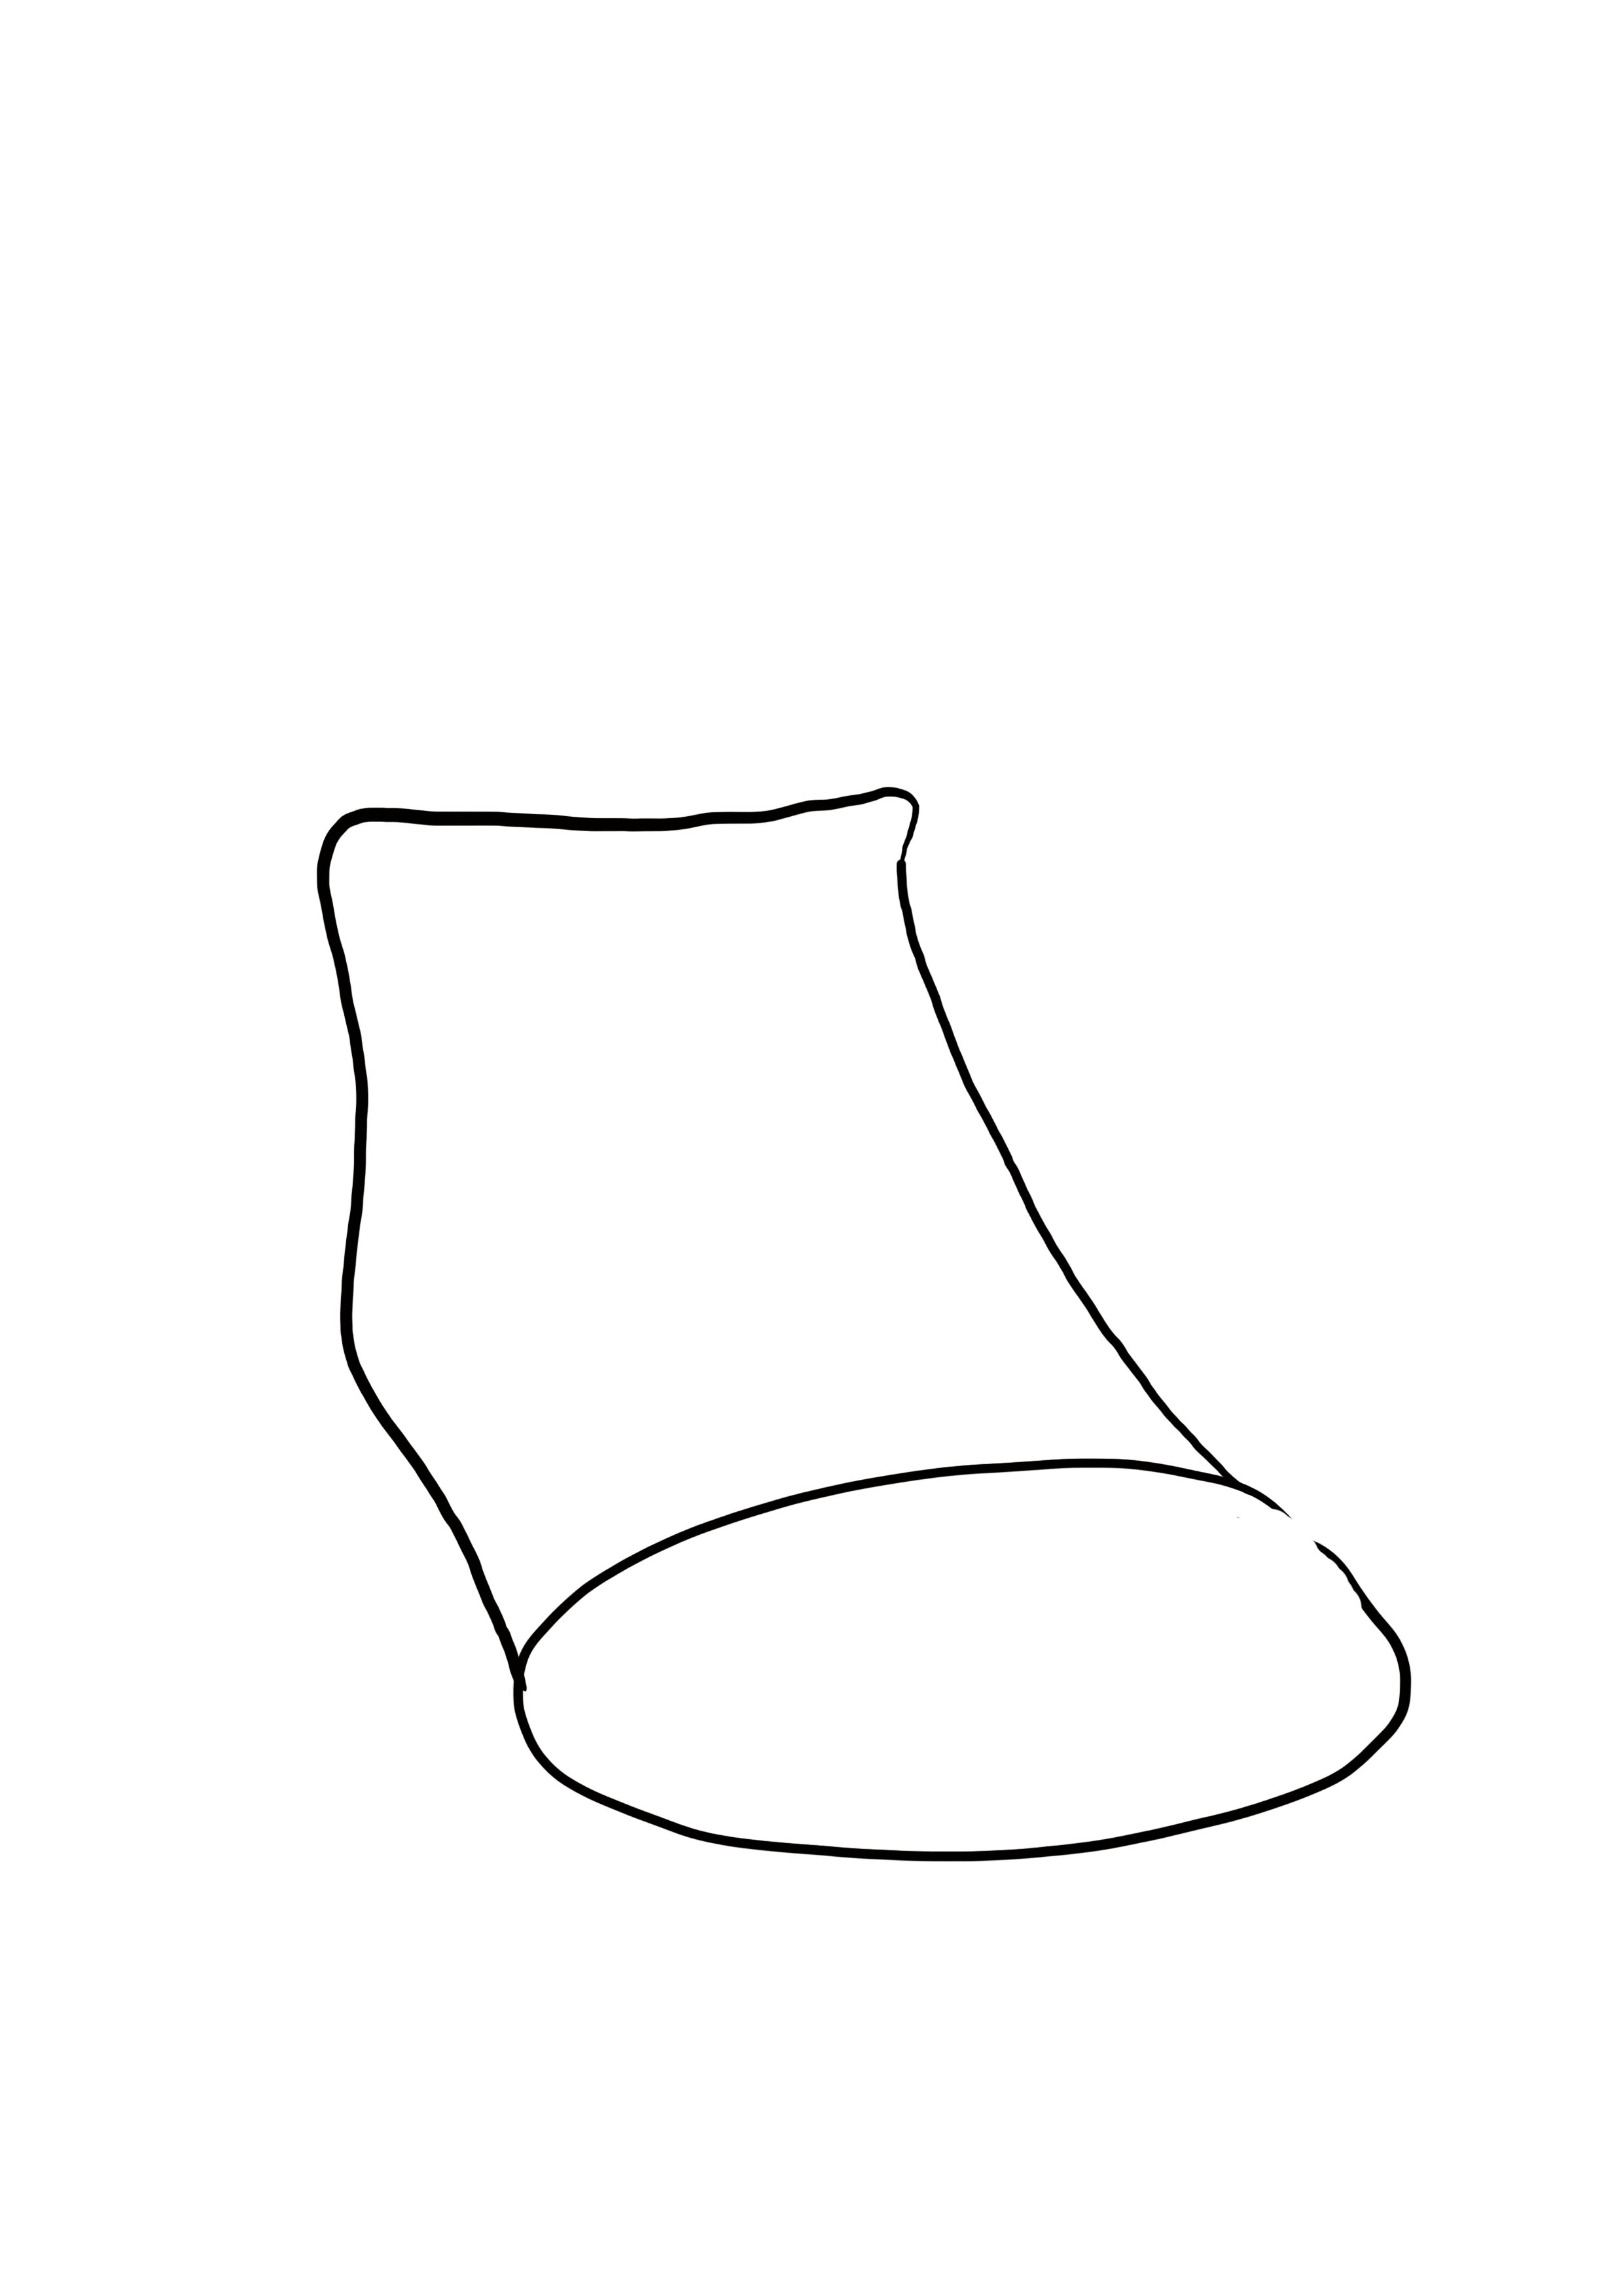 dessin difficile : chaussure étape 2